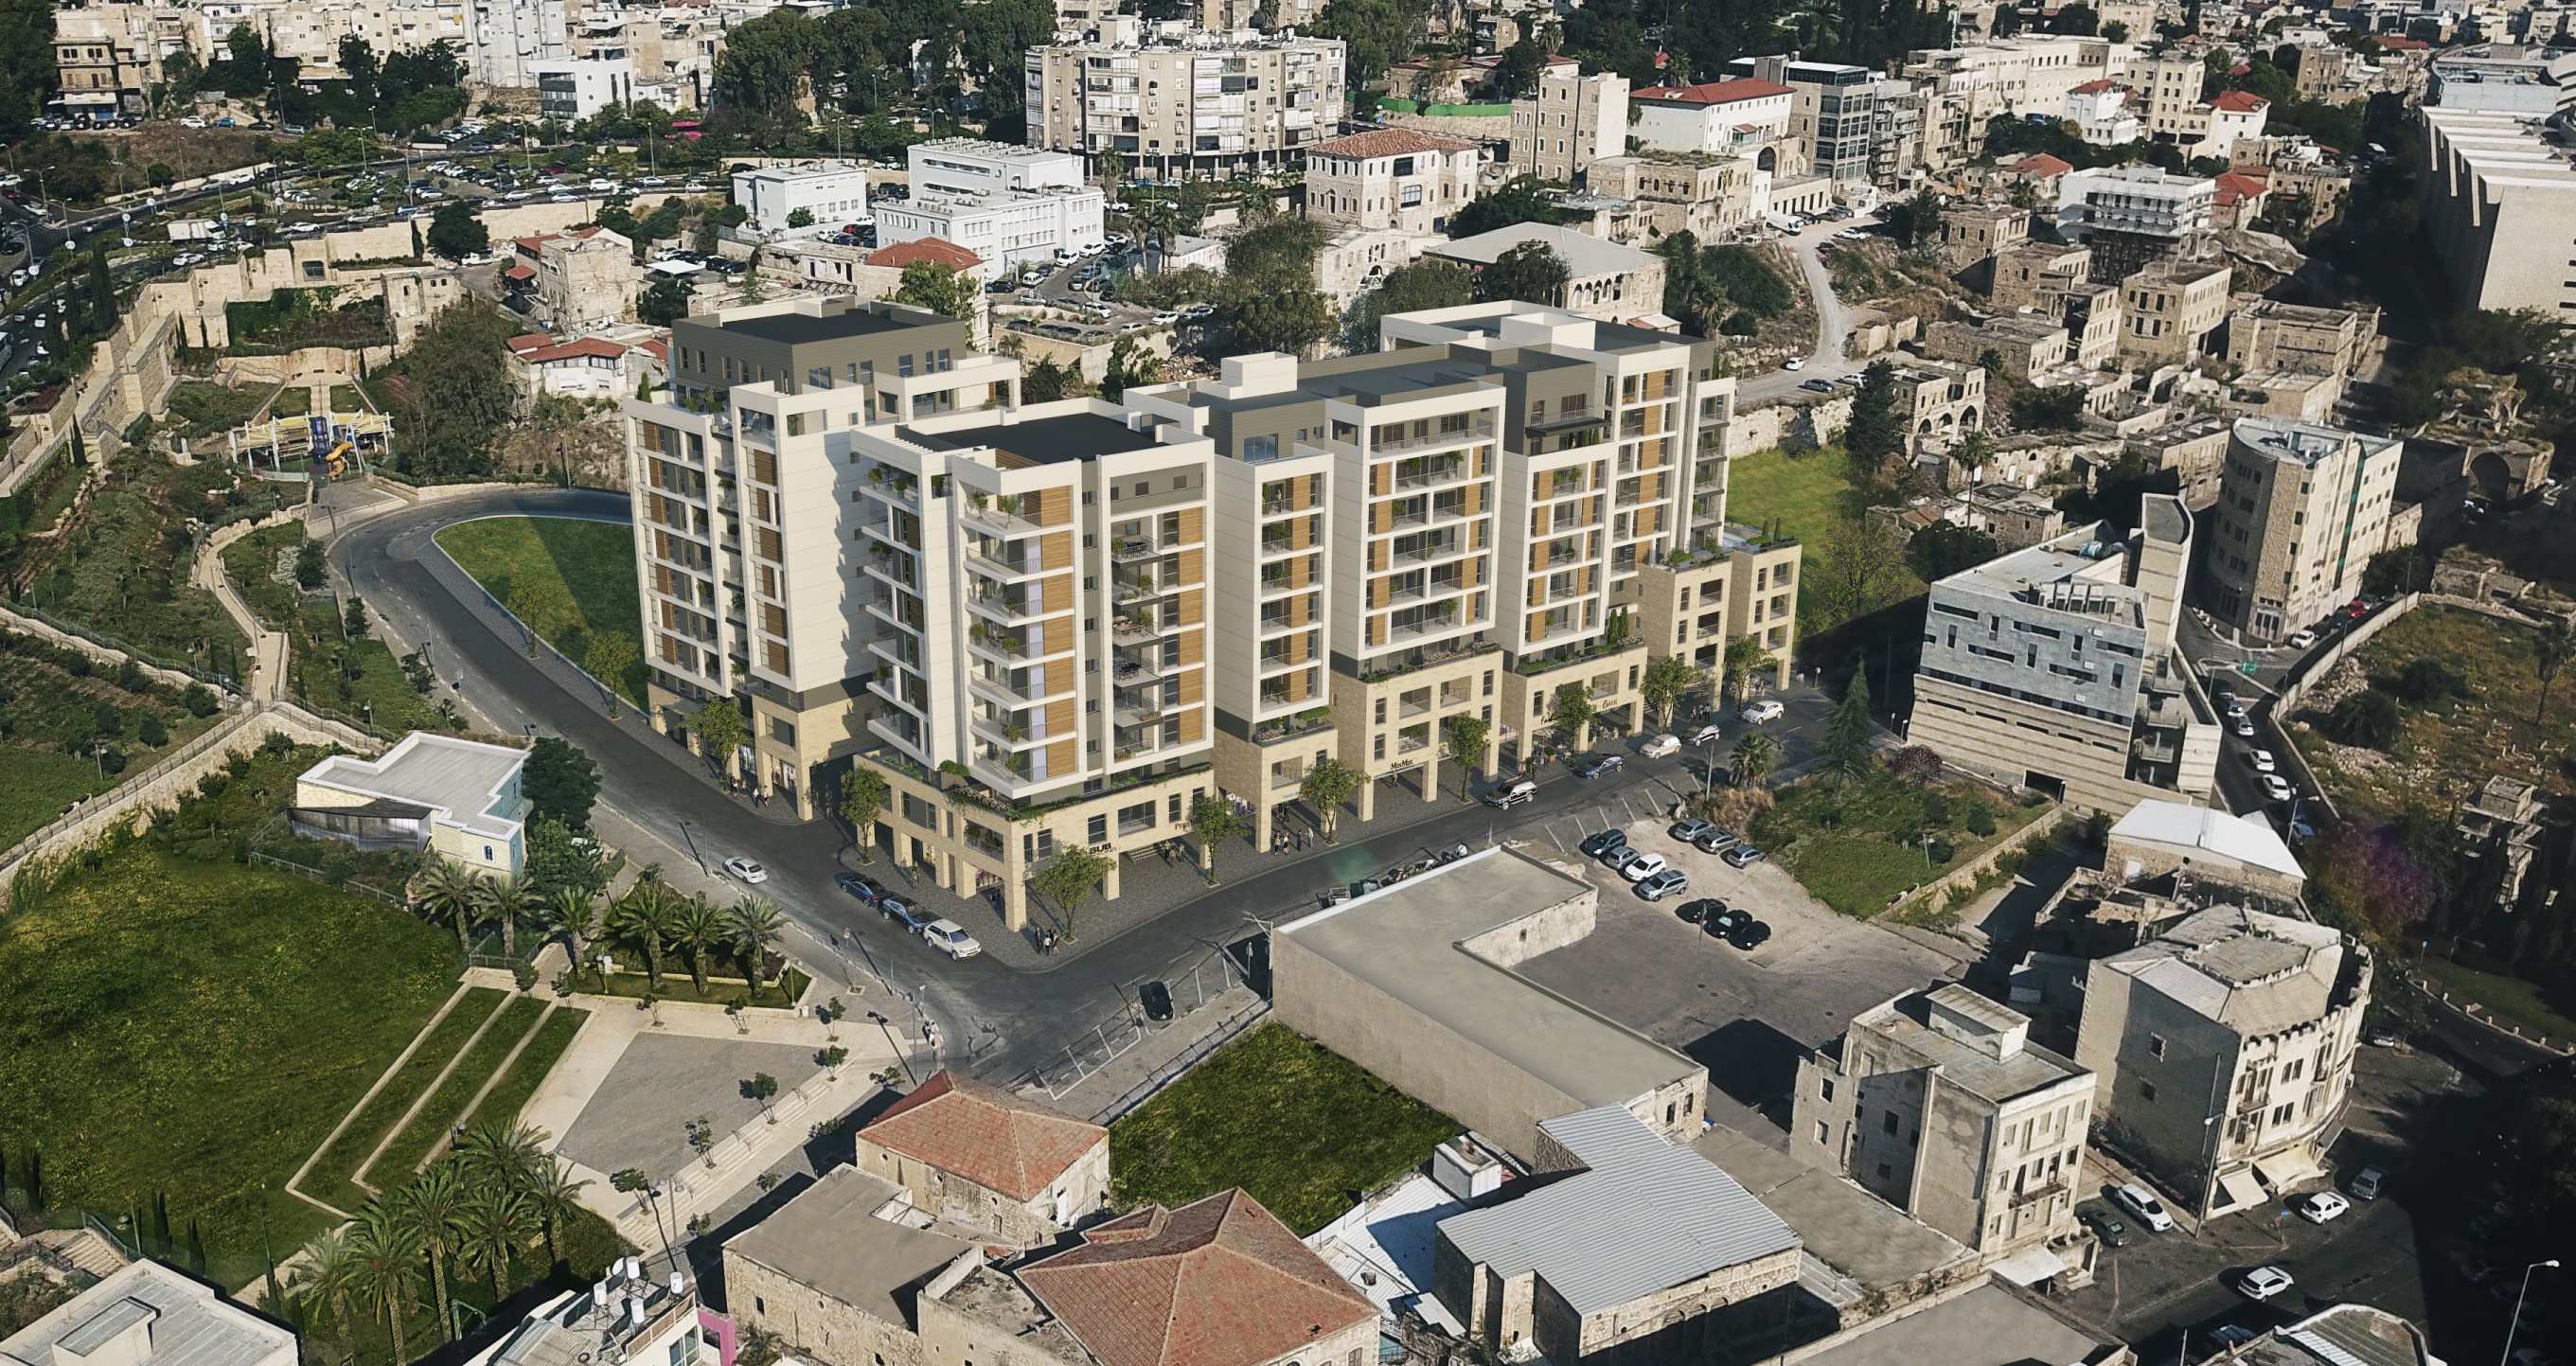 רנסנס של שכונות עתיקות ברחבי הארץ: צפי לאפסייד משמעותי בשכונת ואדי סאליב בחיפה